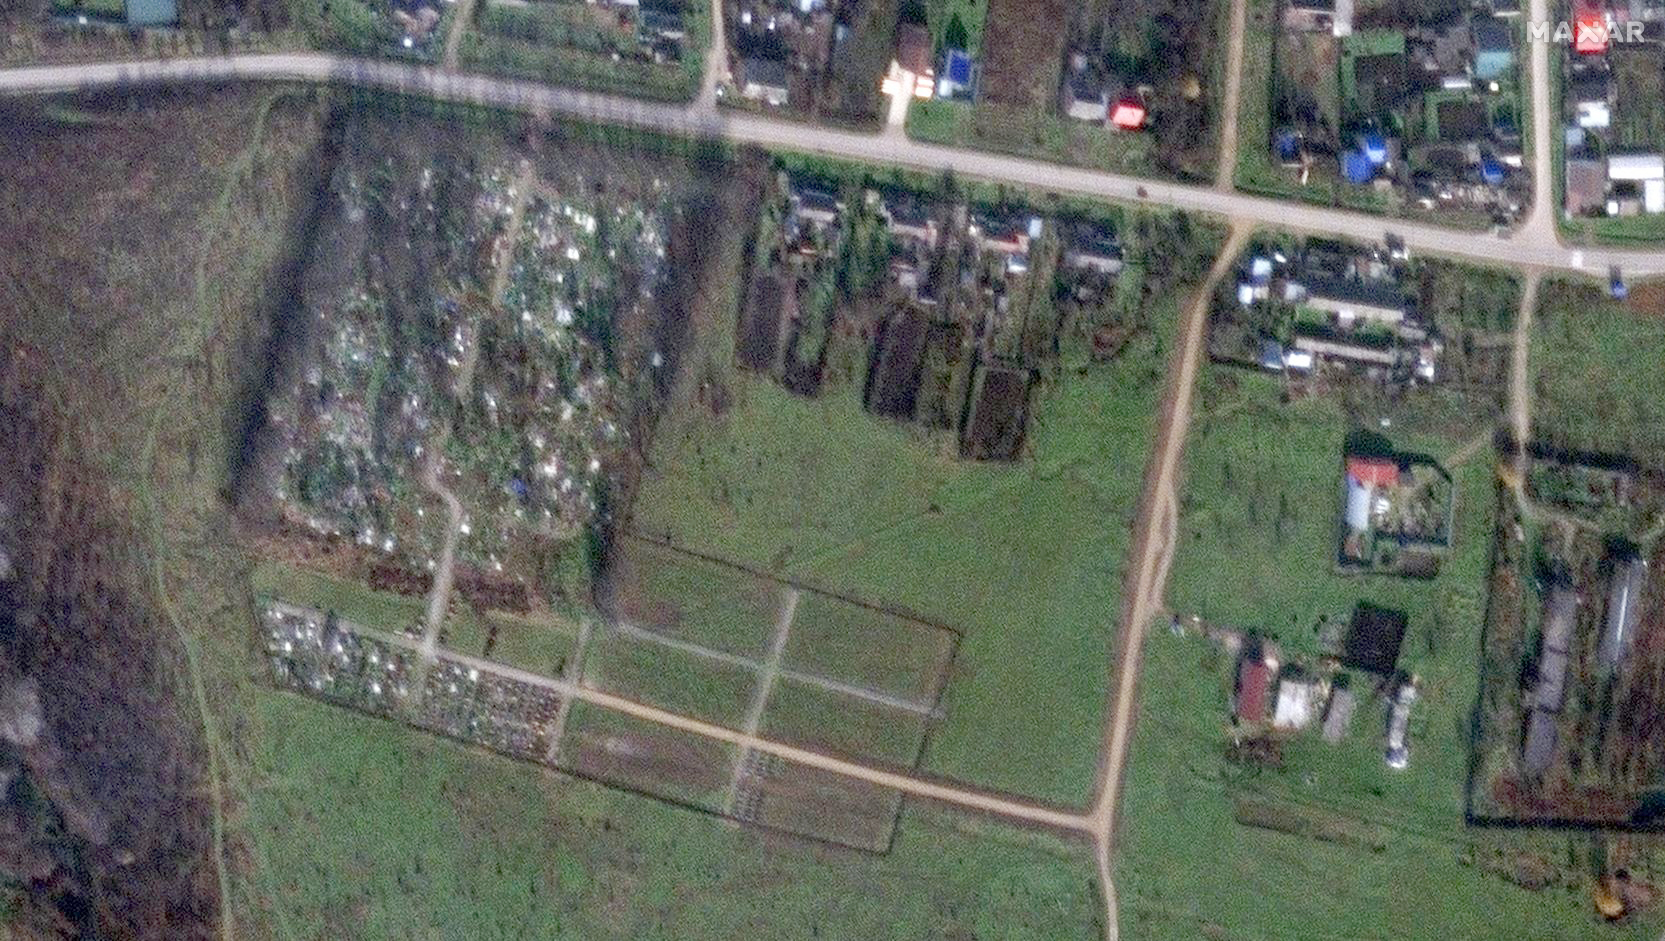 Zdjęcia satelitarne pokazują rzędy nowych grobów w pobliżu wsi Pakinskaja w rosyjskim regionie Krasnodarskim, 24 listopada 2022 r.